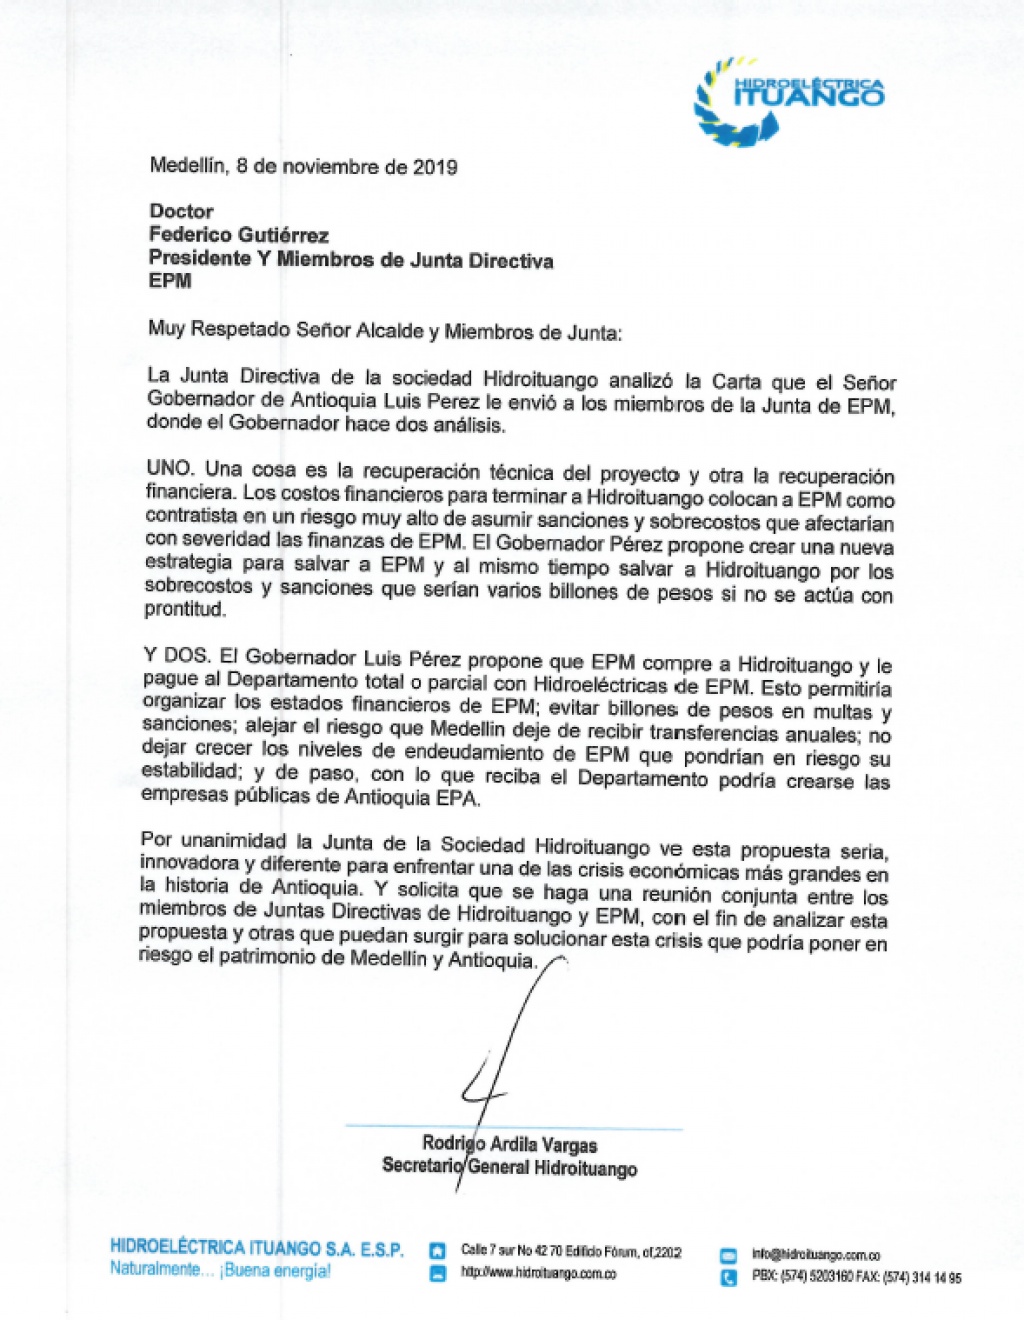 Junta de Hidroituango solicita reunión con la Junta de EPM para analizar propuesta del Gobernador Luis Pérez Gutiérrez